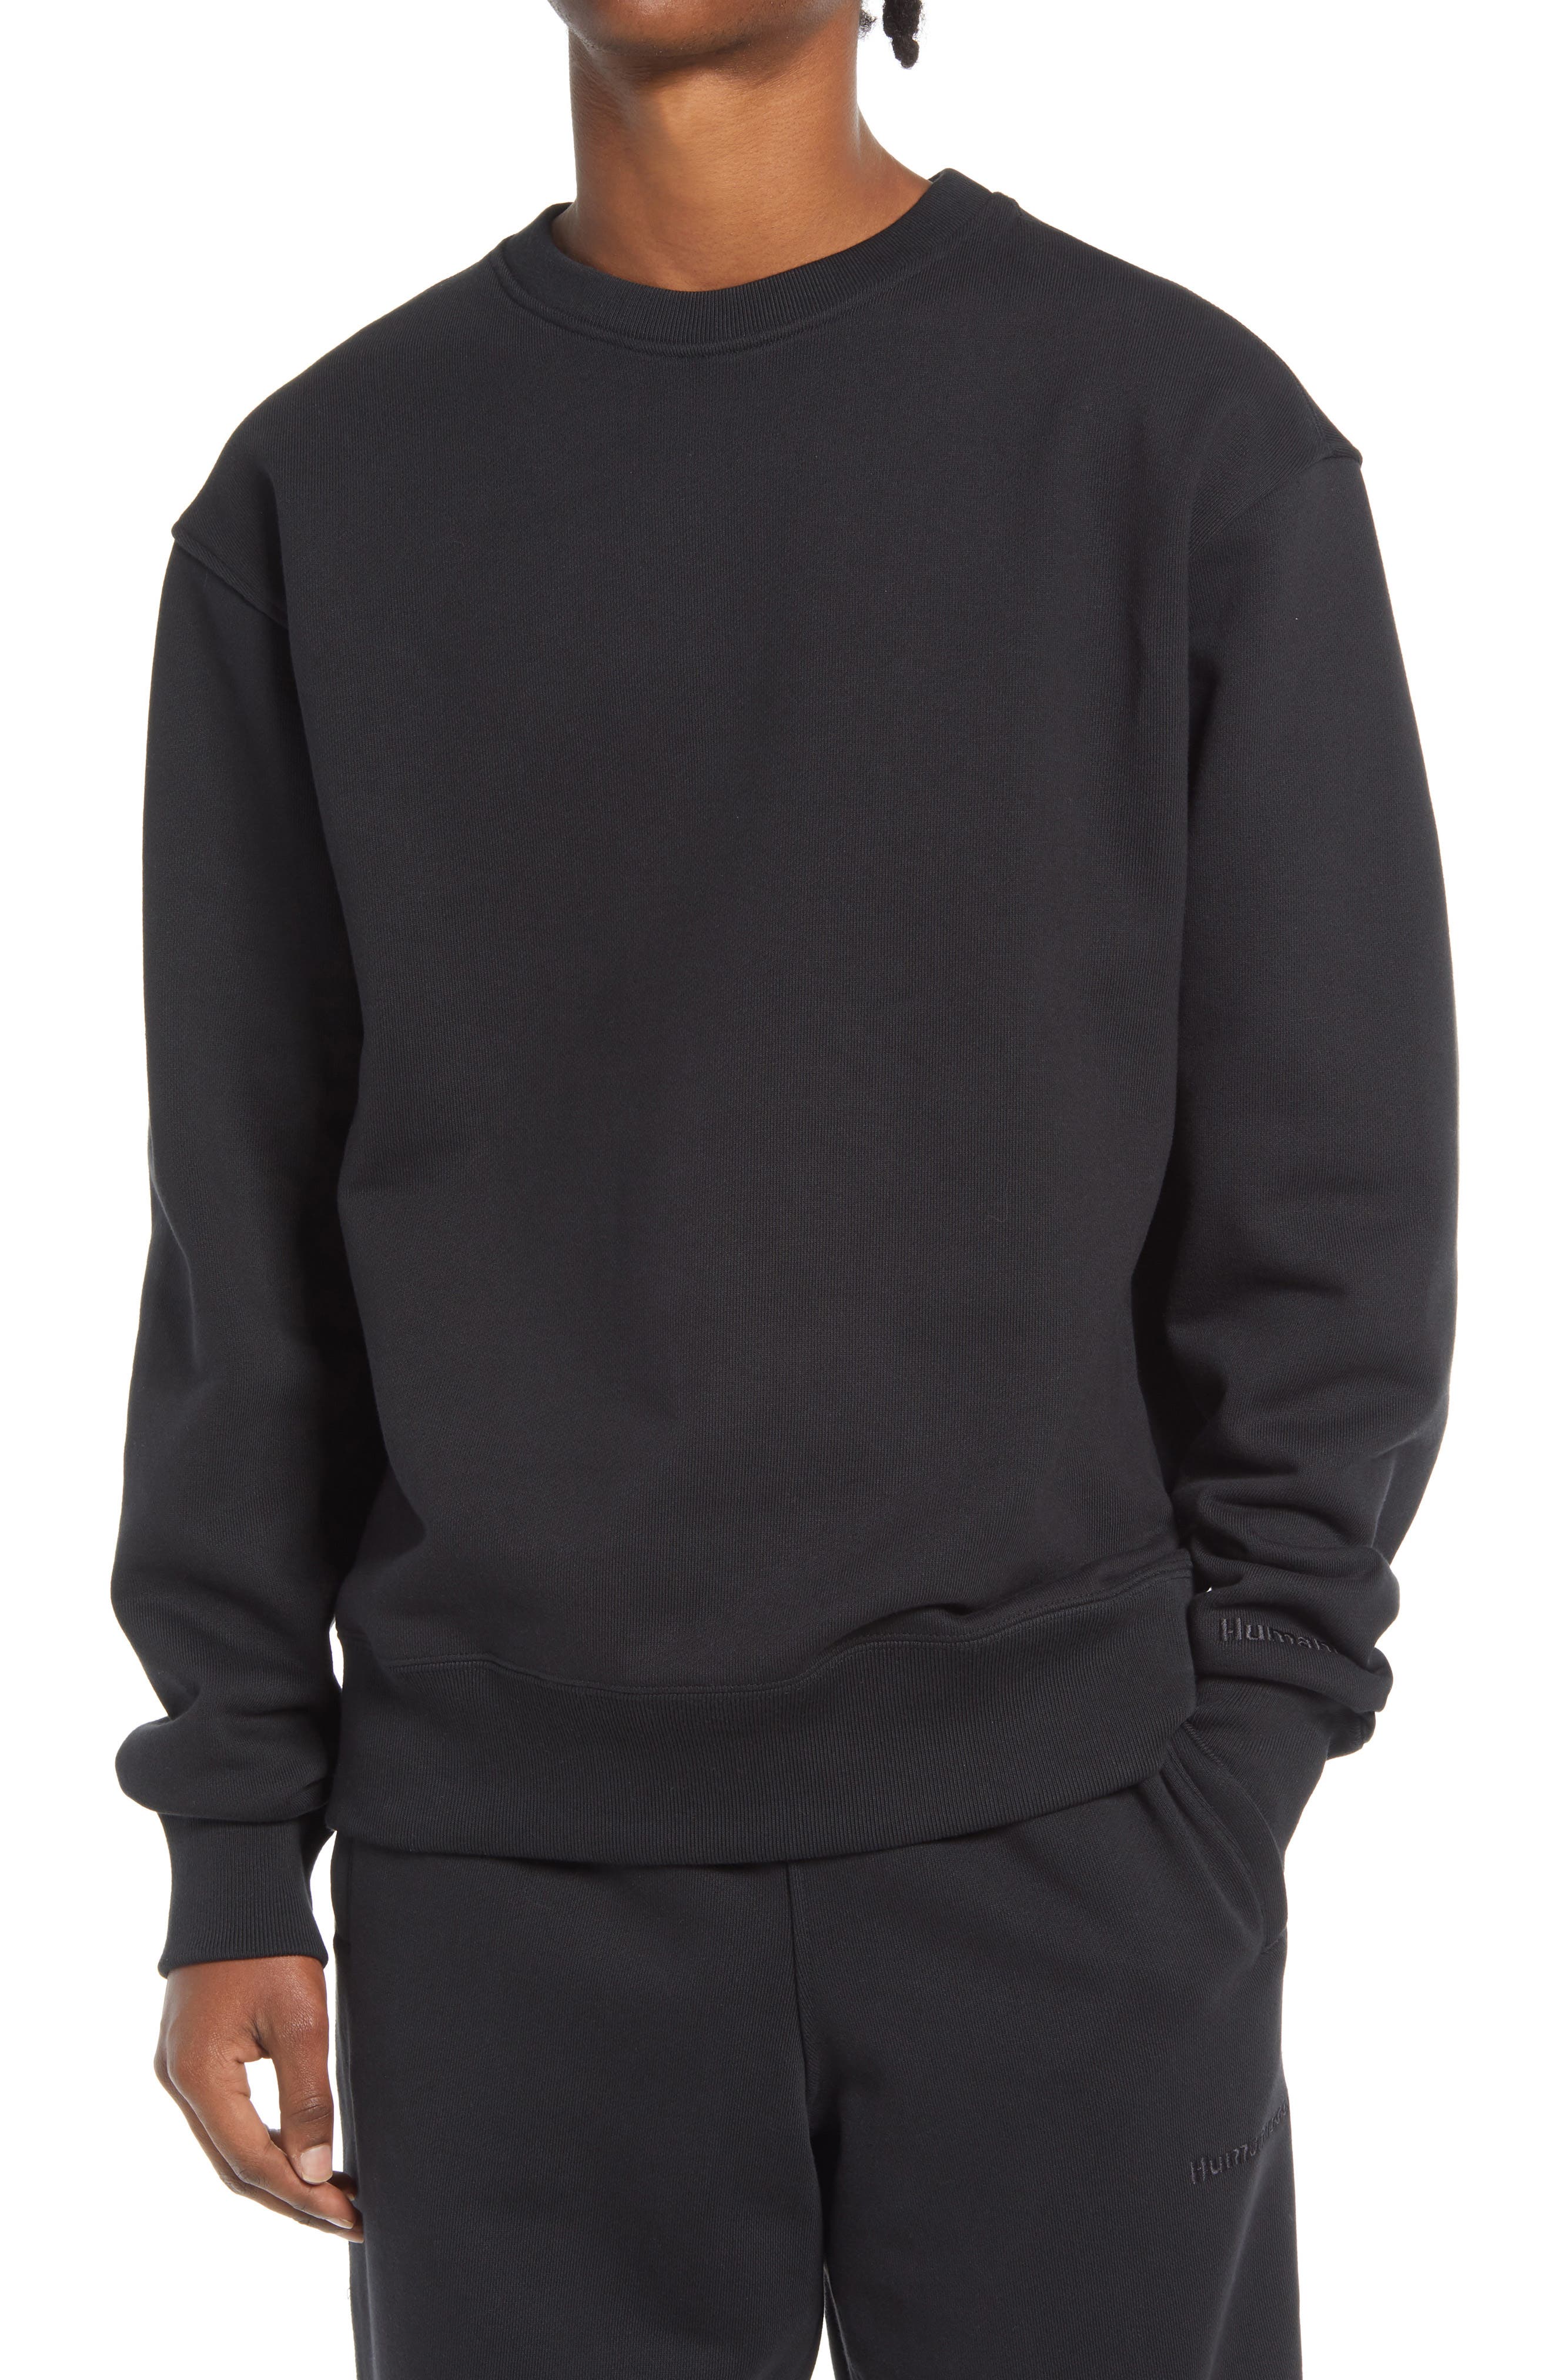 adidas Originals x Pharrell Williams Unisex Crewneck Sweatshirt in Black at Nordstrom